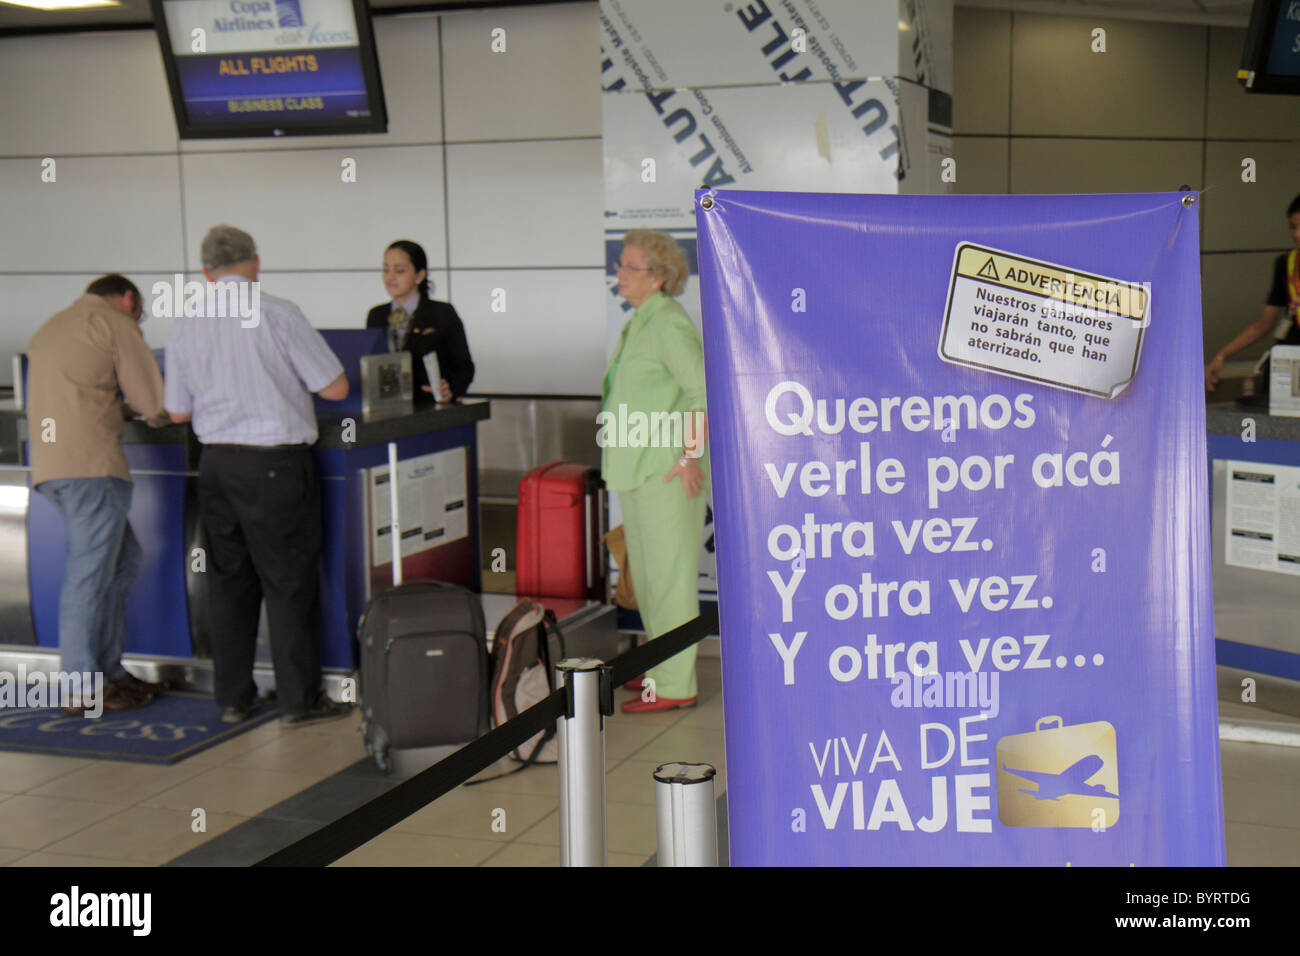 Copa Airlines Stockfotos und -bilder Kaufen - Alamy